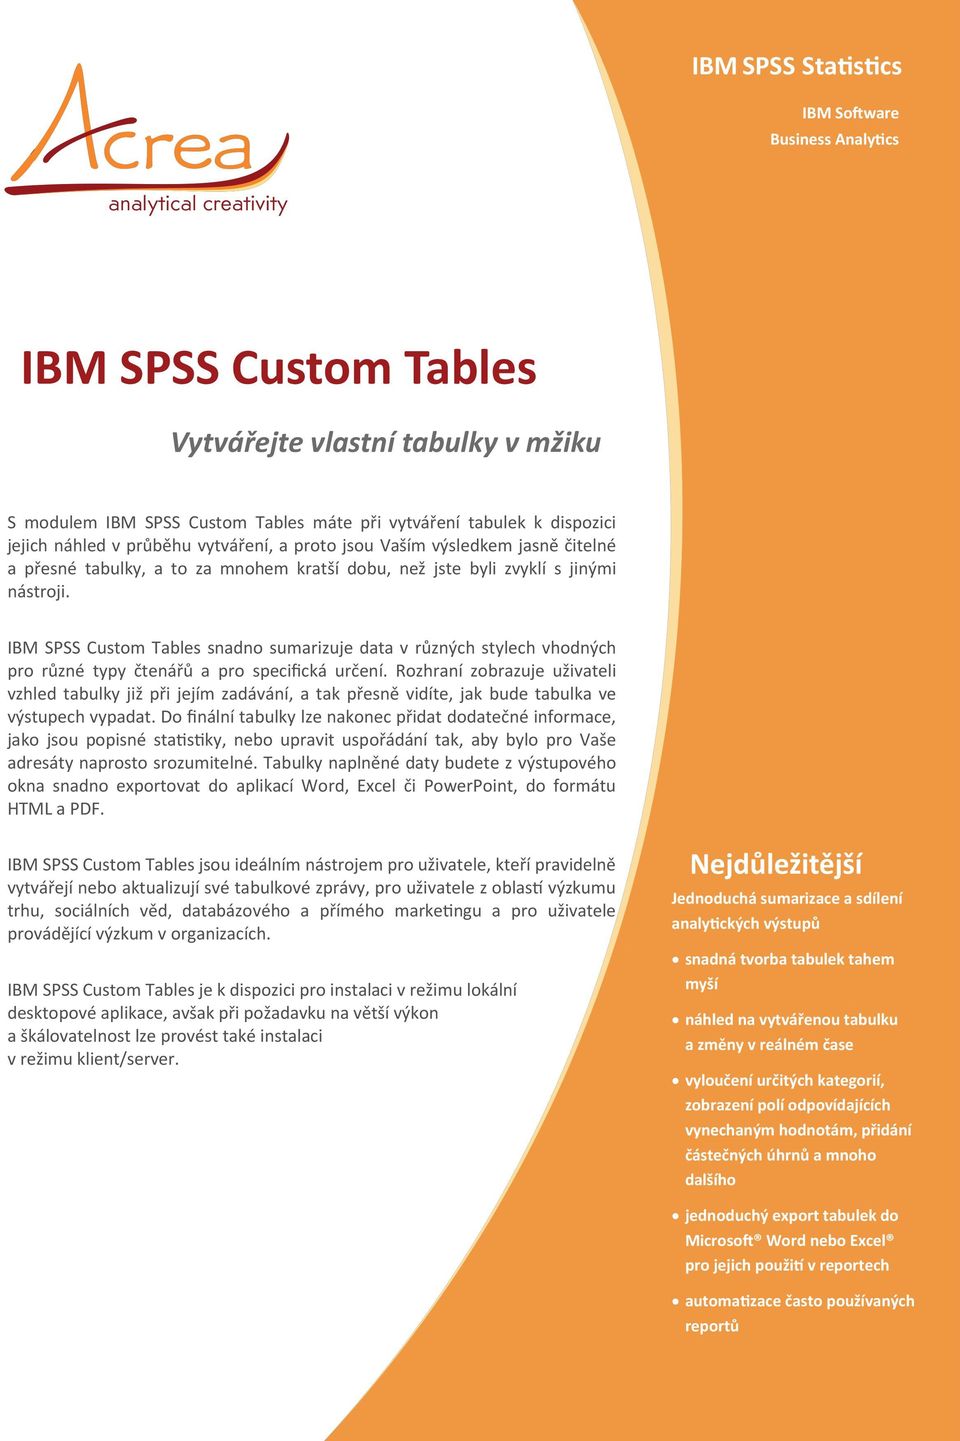 IBM SPSS Custom Tables snadno sumarizuje data v různých stylech vhodných pro různé typy čtenářů a pro specifická určení.